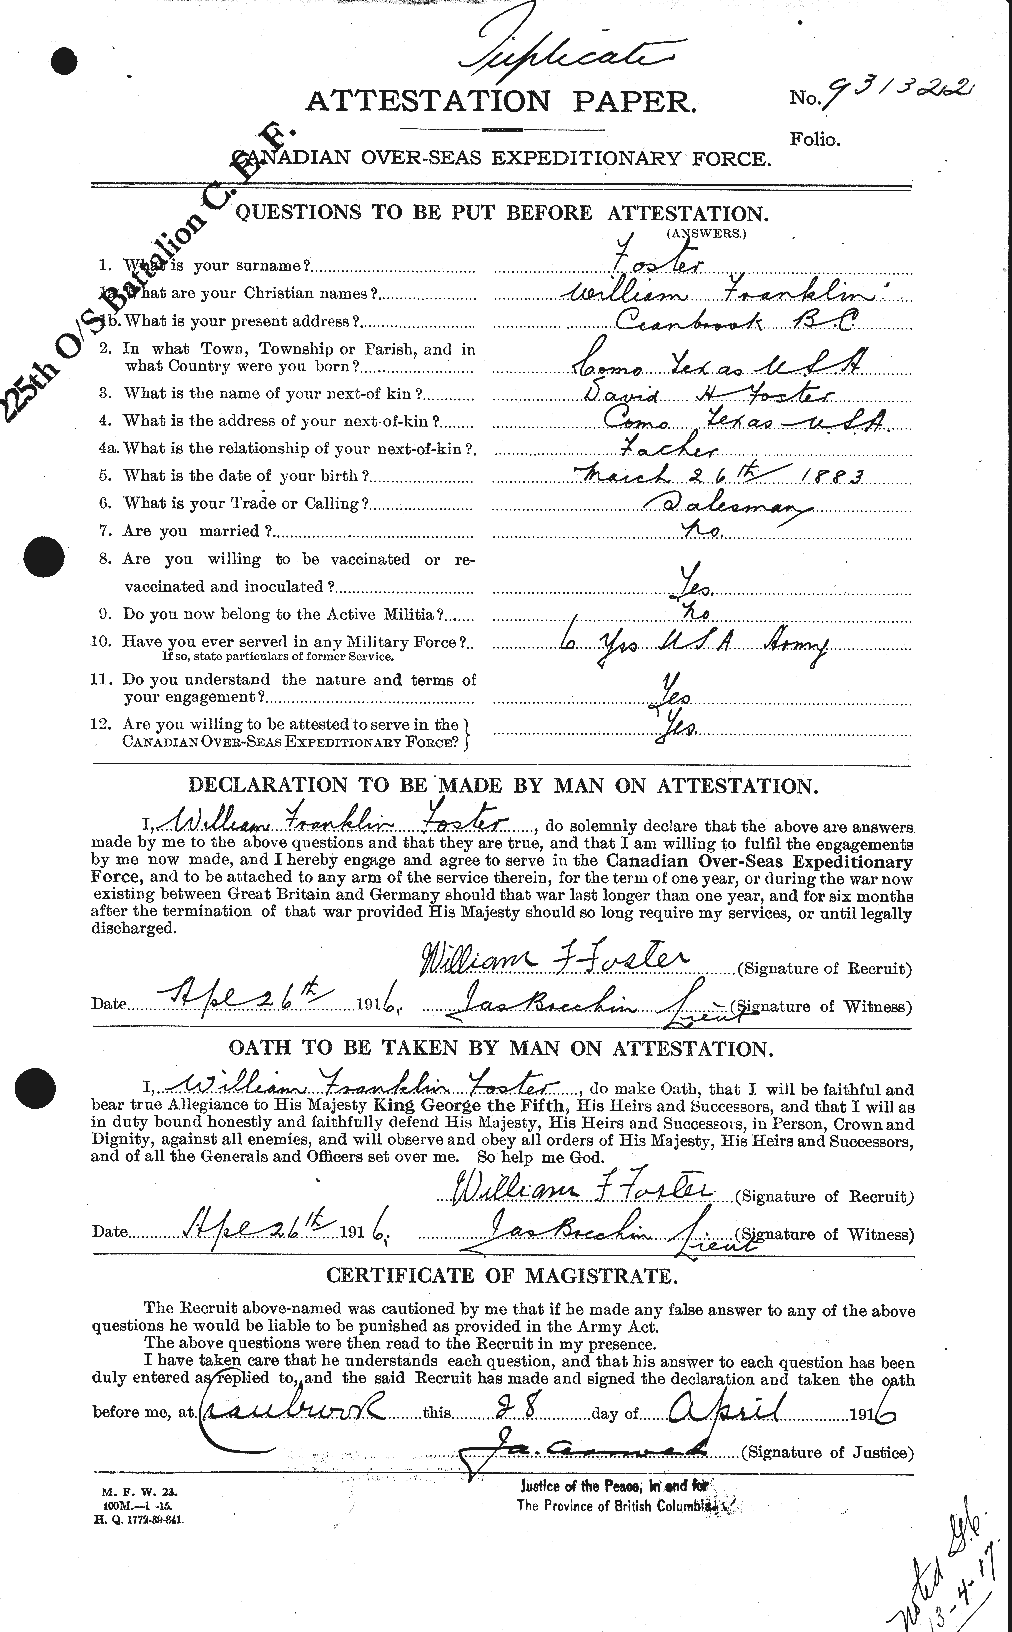 Dossiers du Personnel de la Première Guerre mondiale - CEC 328742a